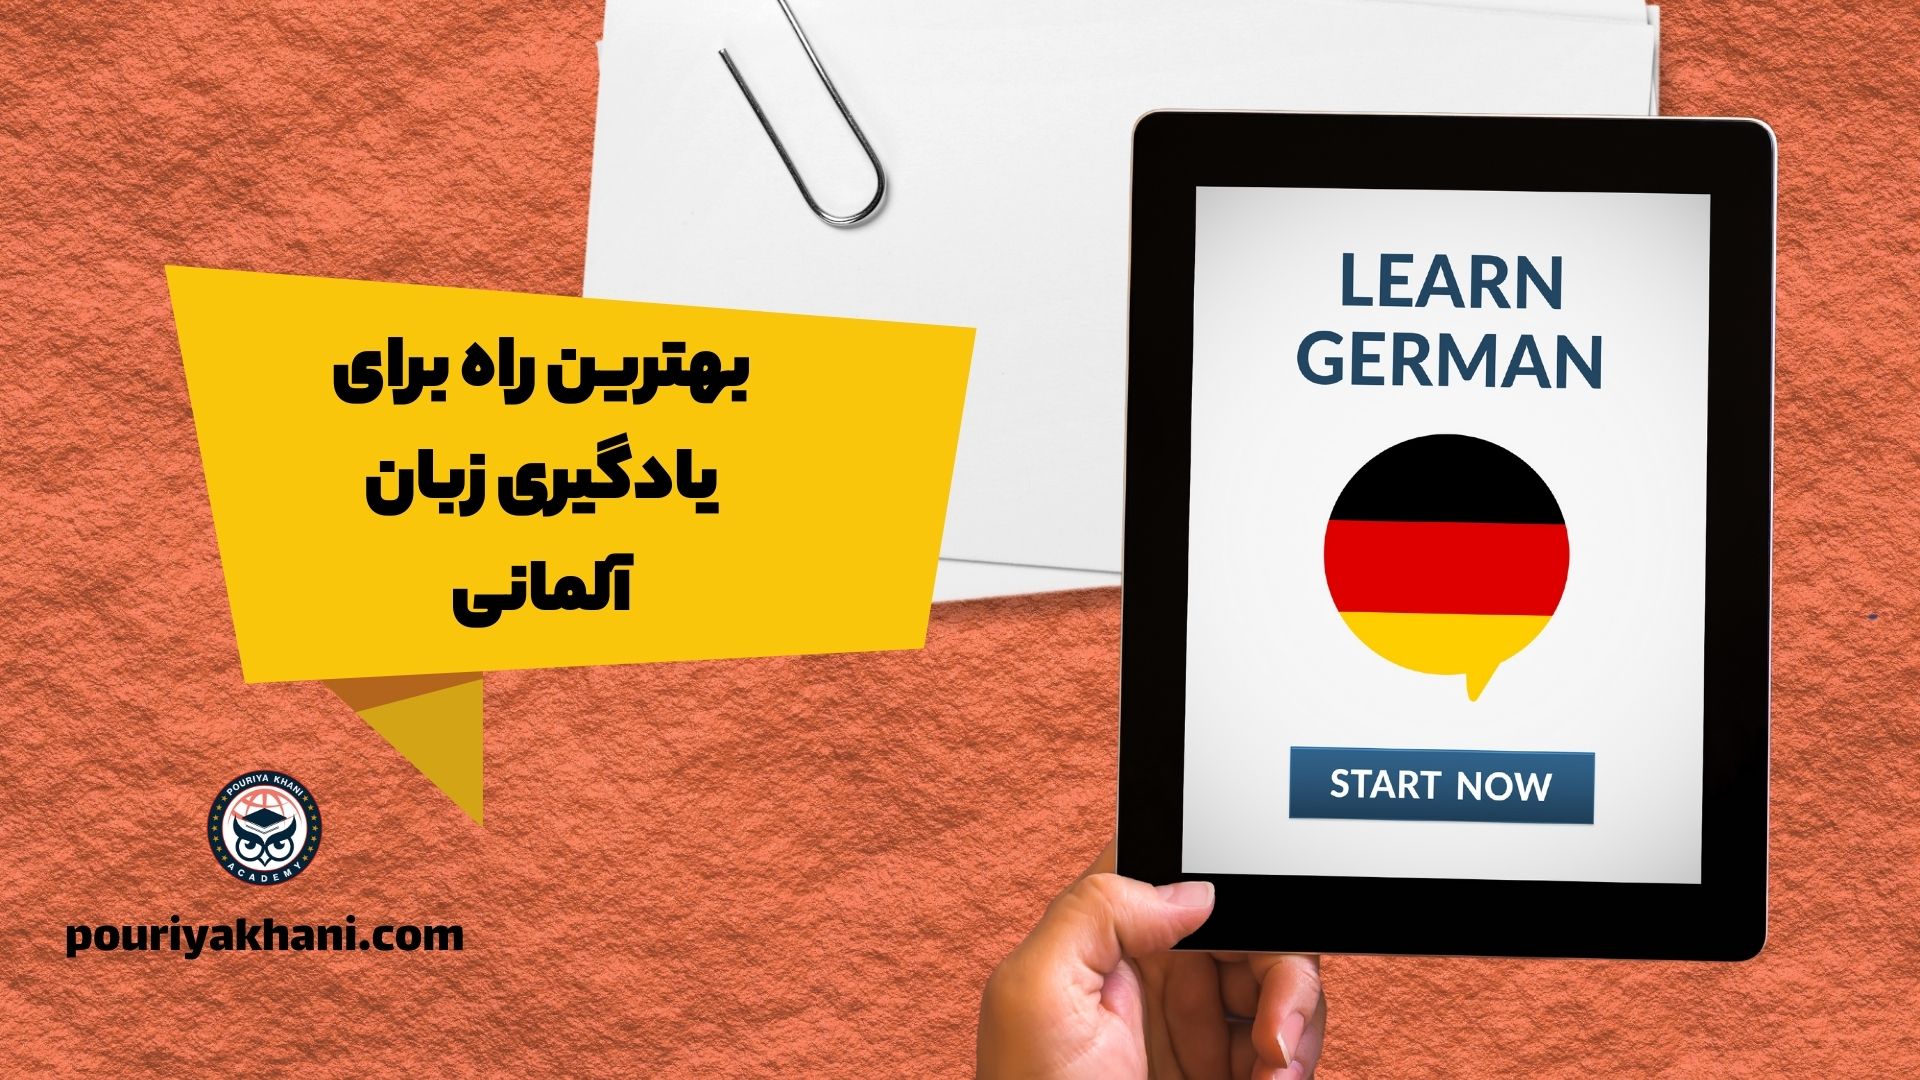 بهترین راه برای یادگیری زبان آلمانی